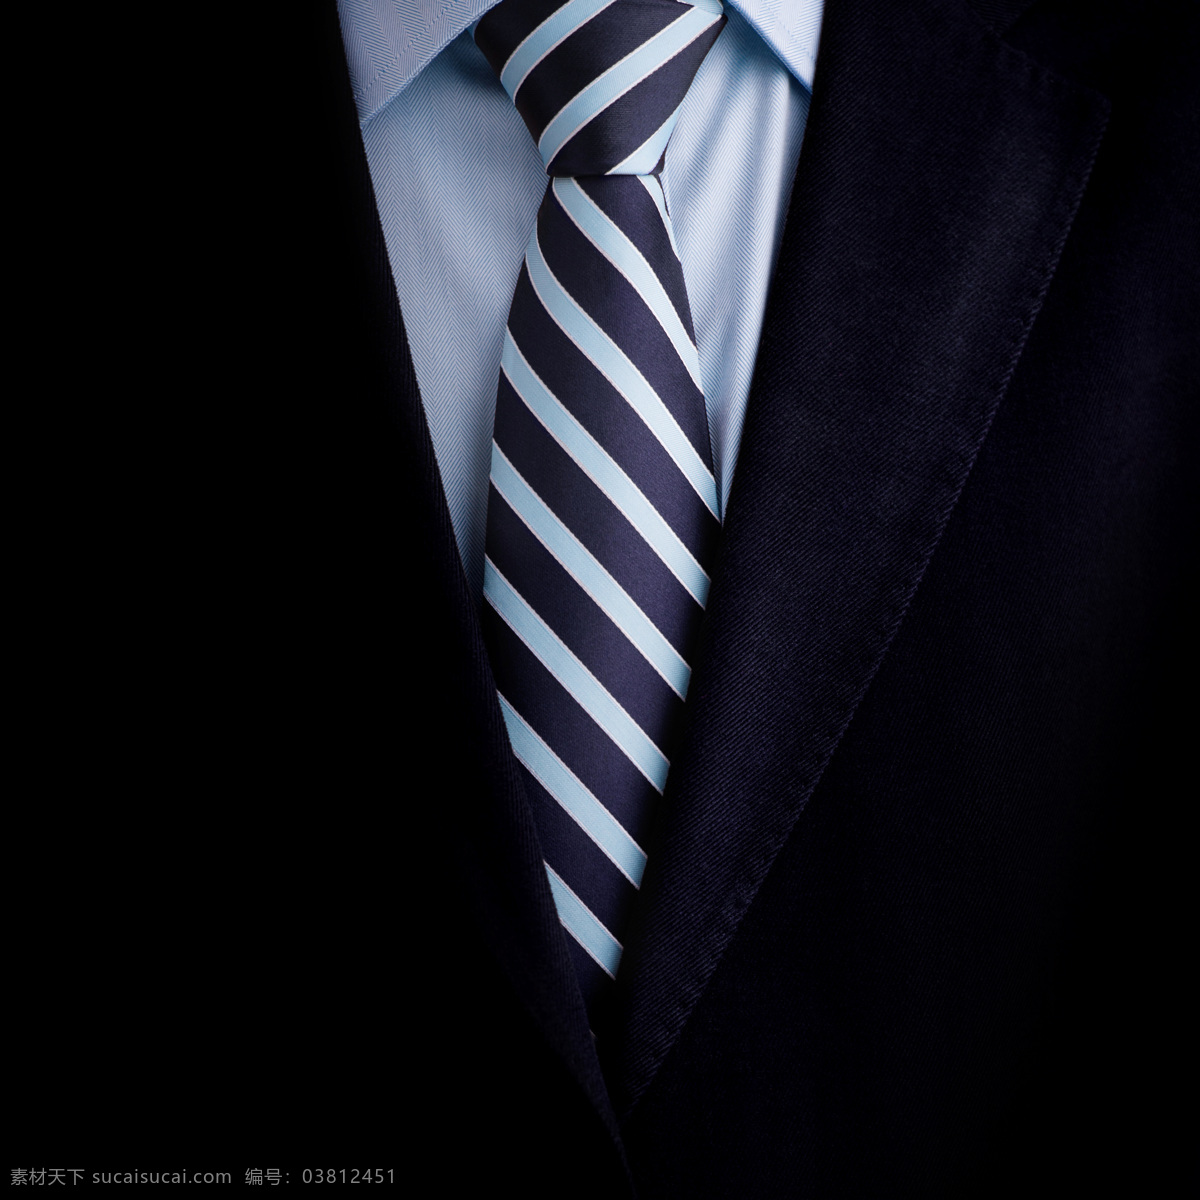 条纹 领带 商务 男人 西服 西装 职业装 现代商务 商务男人 职业人物 职场 珠宝服饰 生活百科